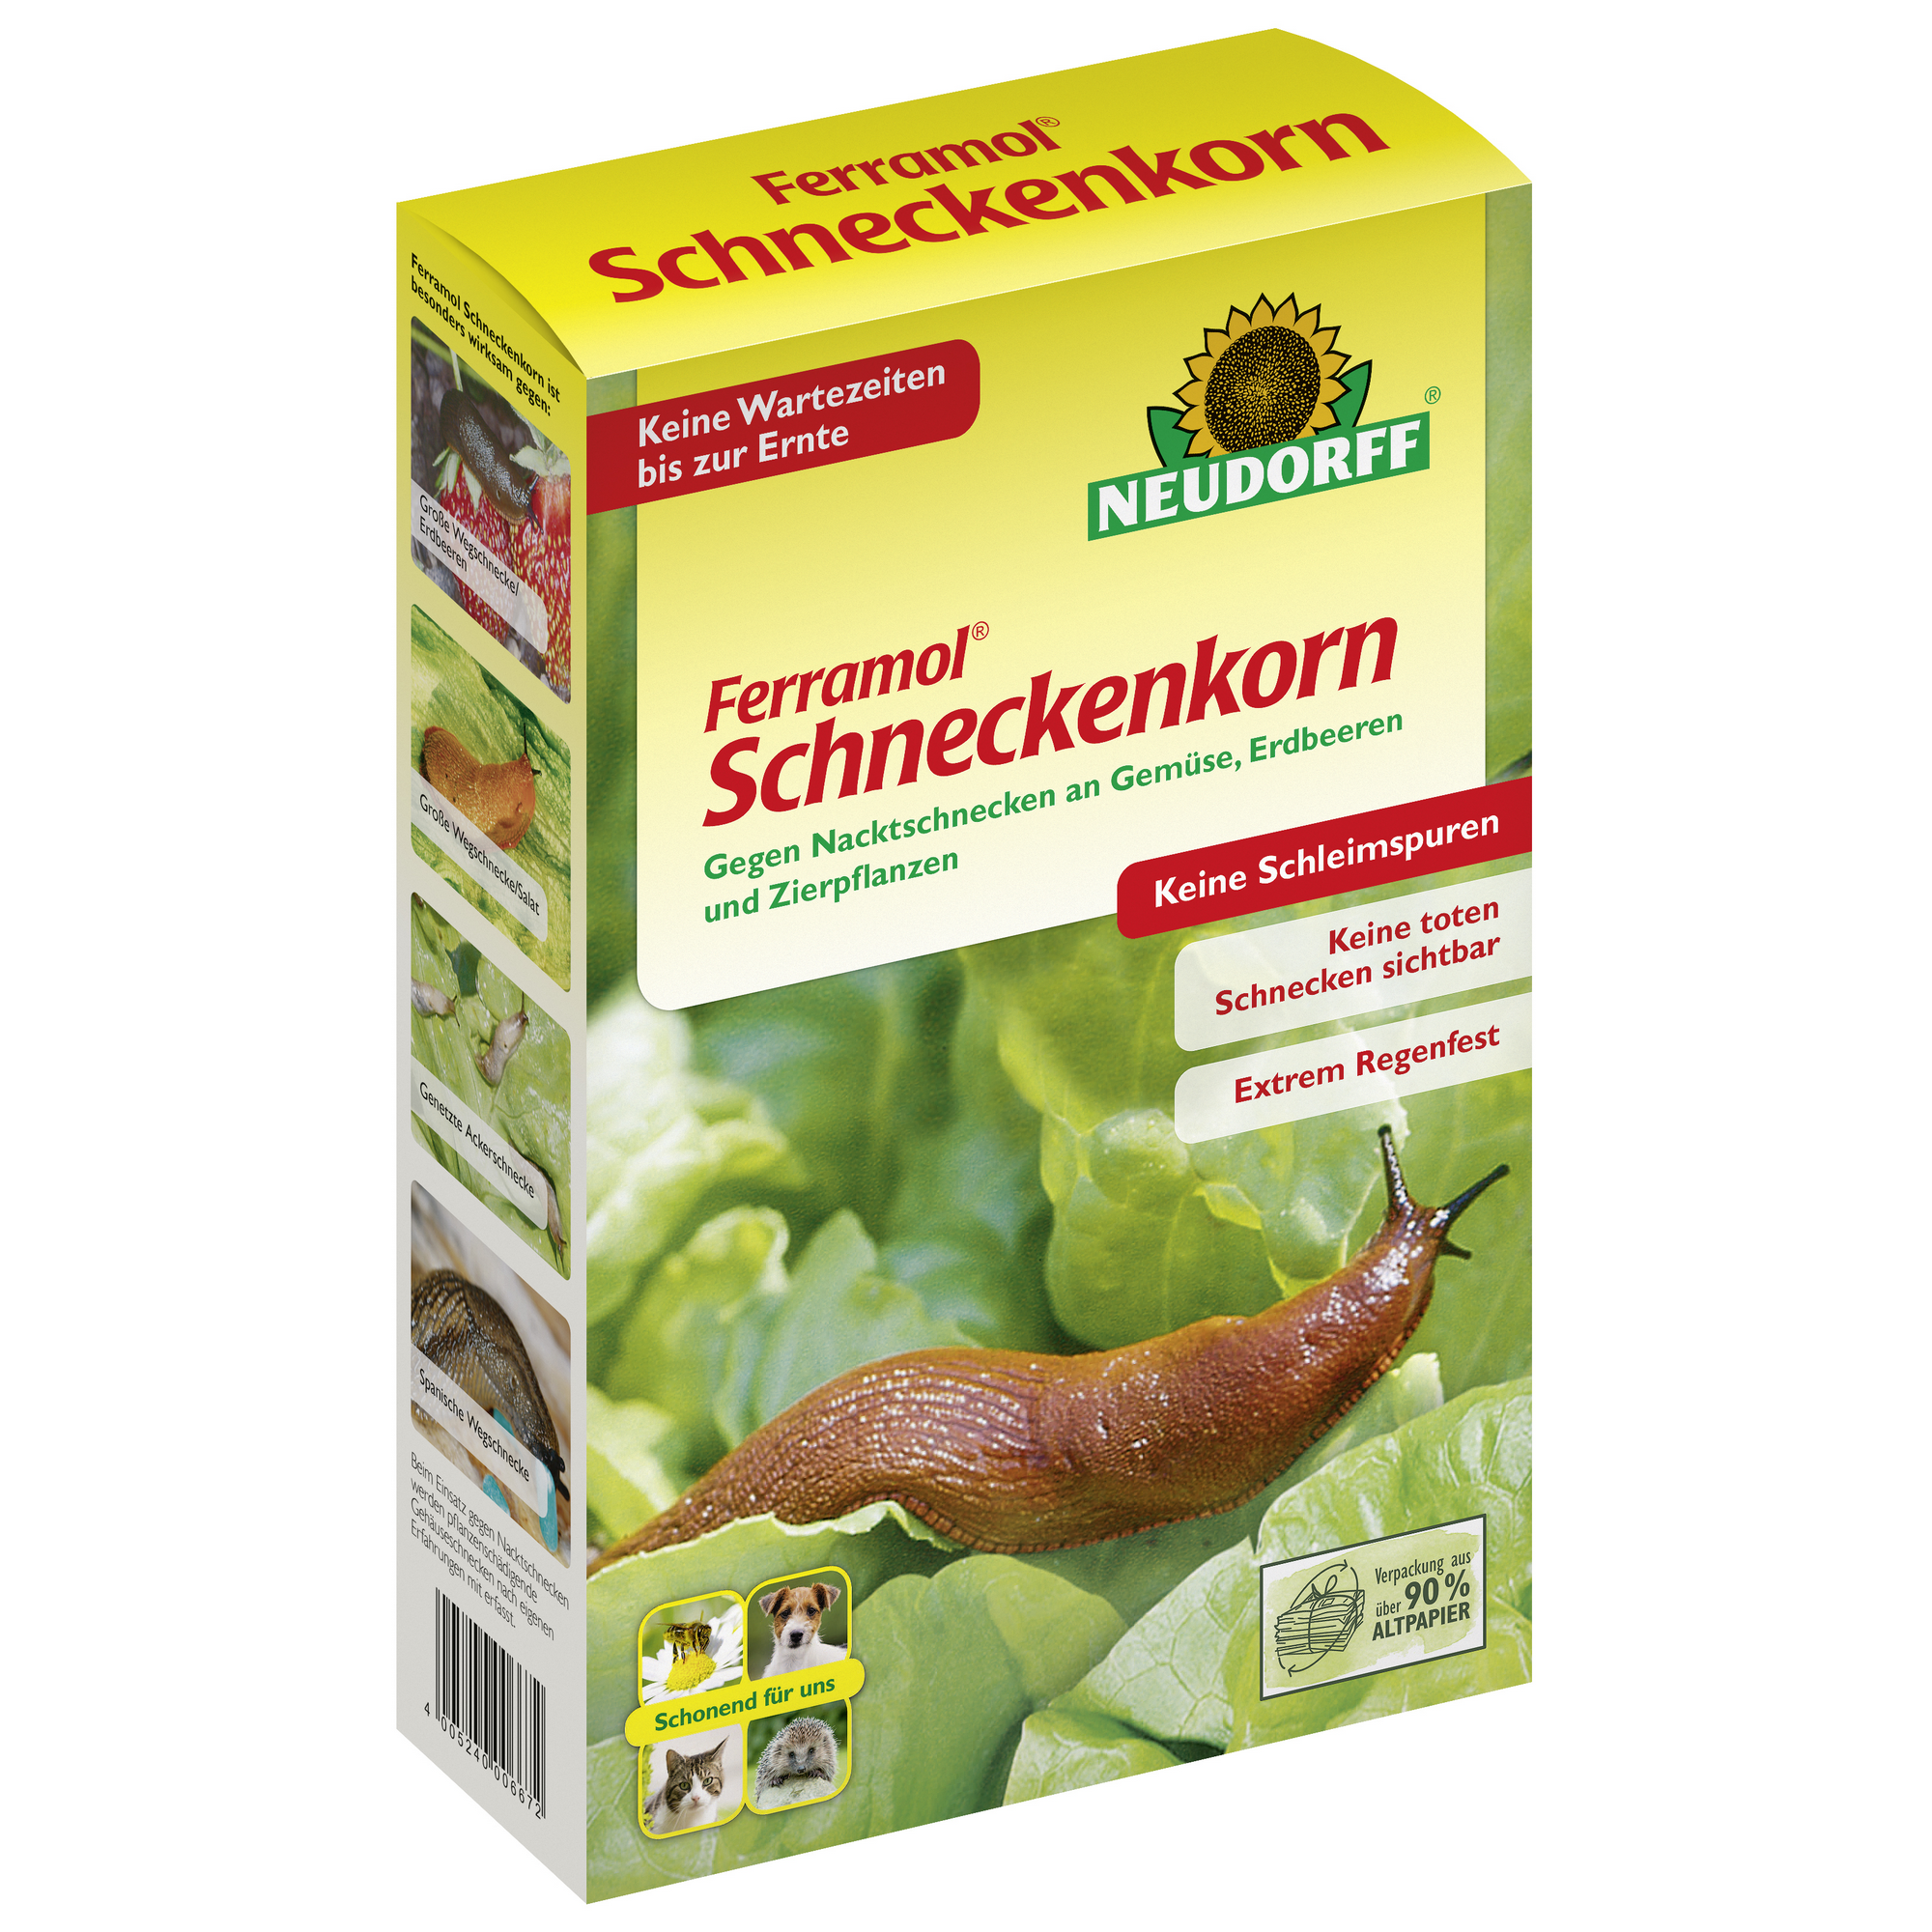 Schneckenkorn 'Ferramol' 2 kg + product picture